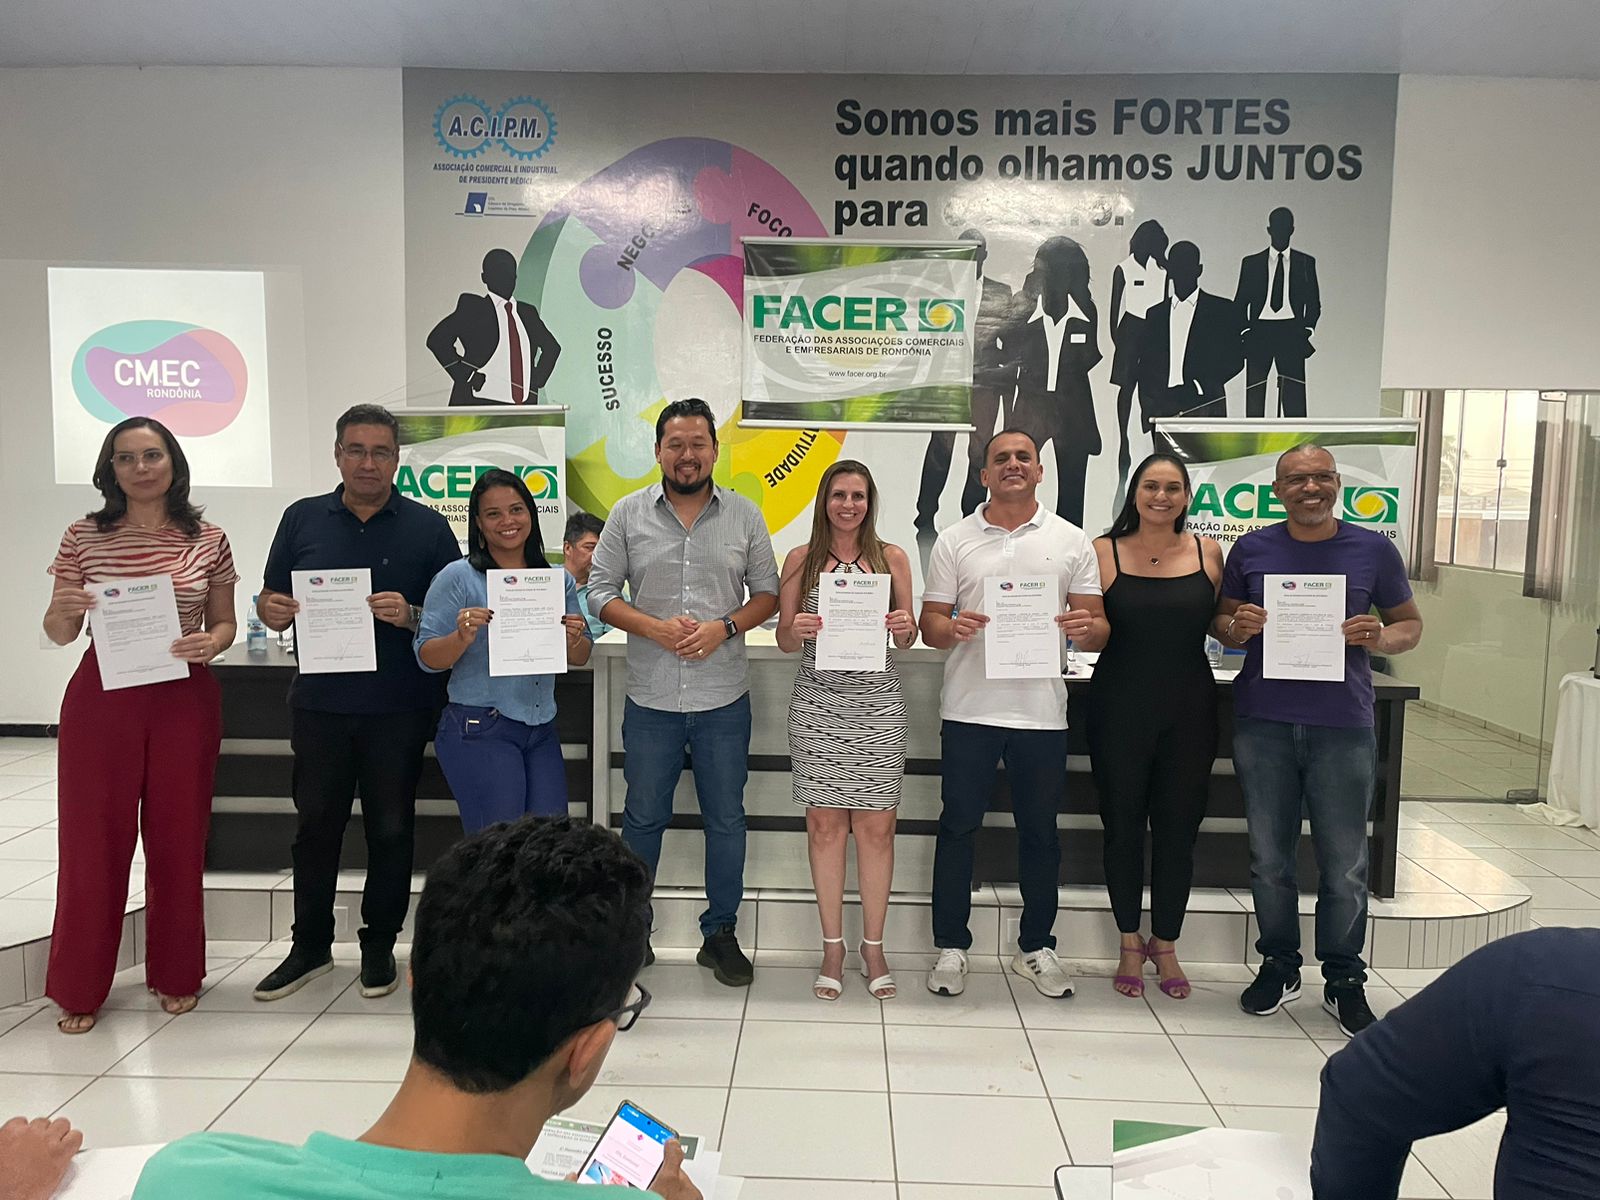 Federação das Associações Comerciais e Empresariais de Rondônia